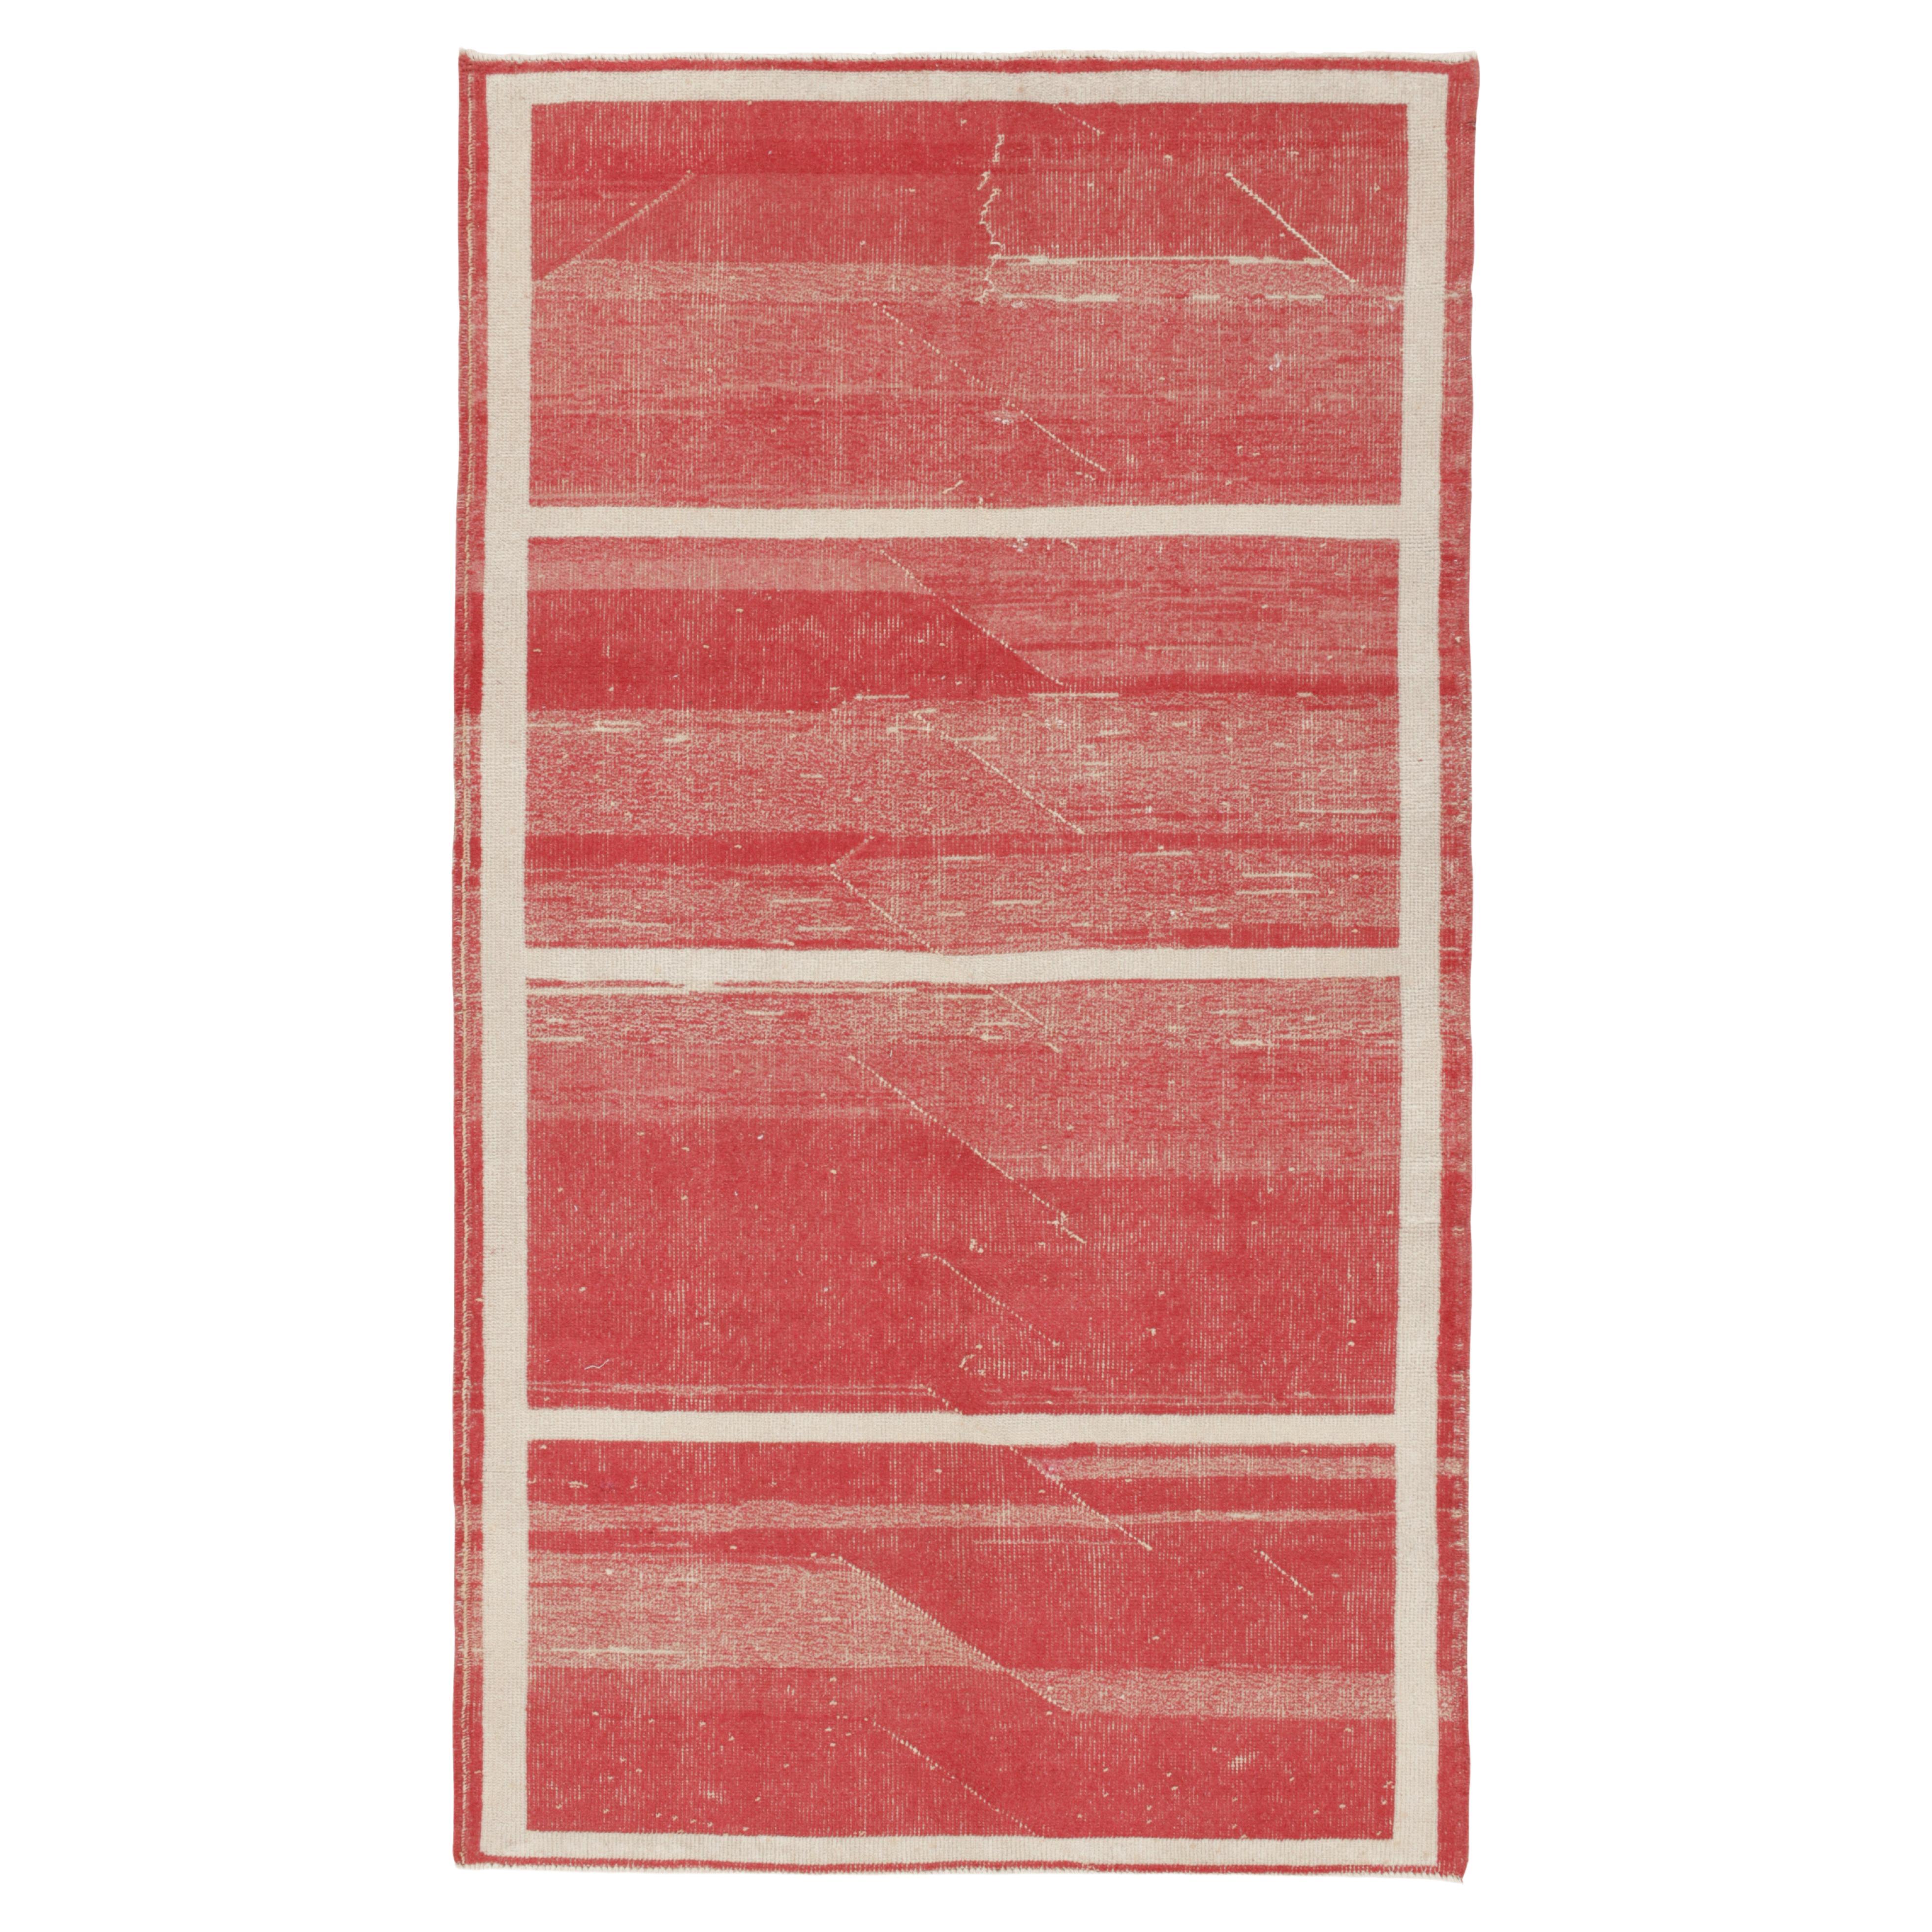 Vintage-Teppich in Rot mit cremefarbenen Streifenmuster von Teppich & Kilim